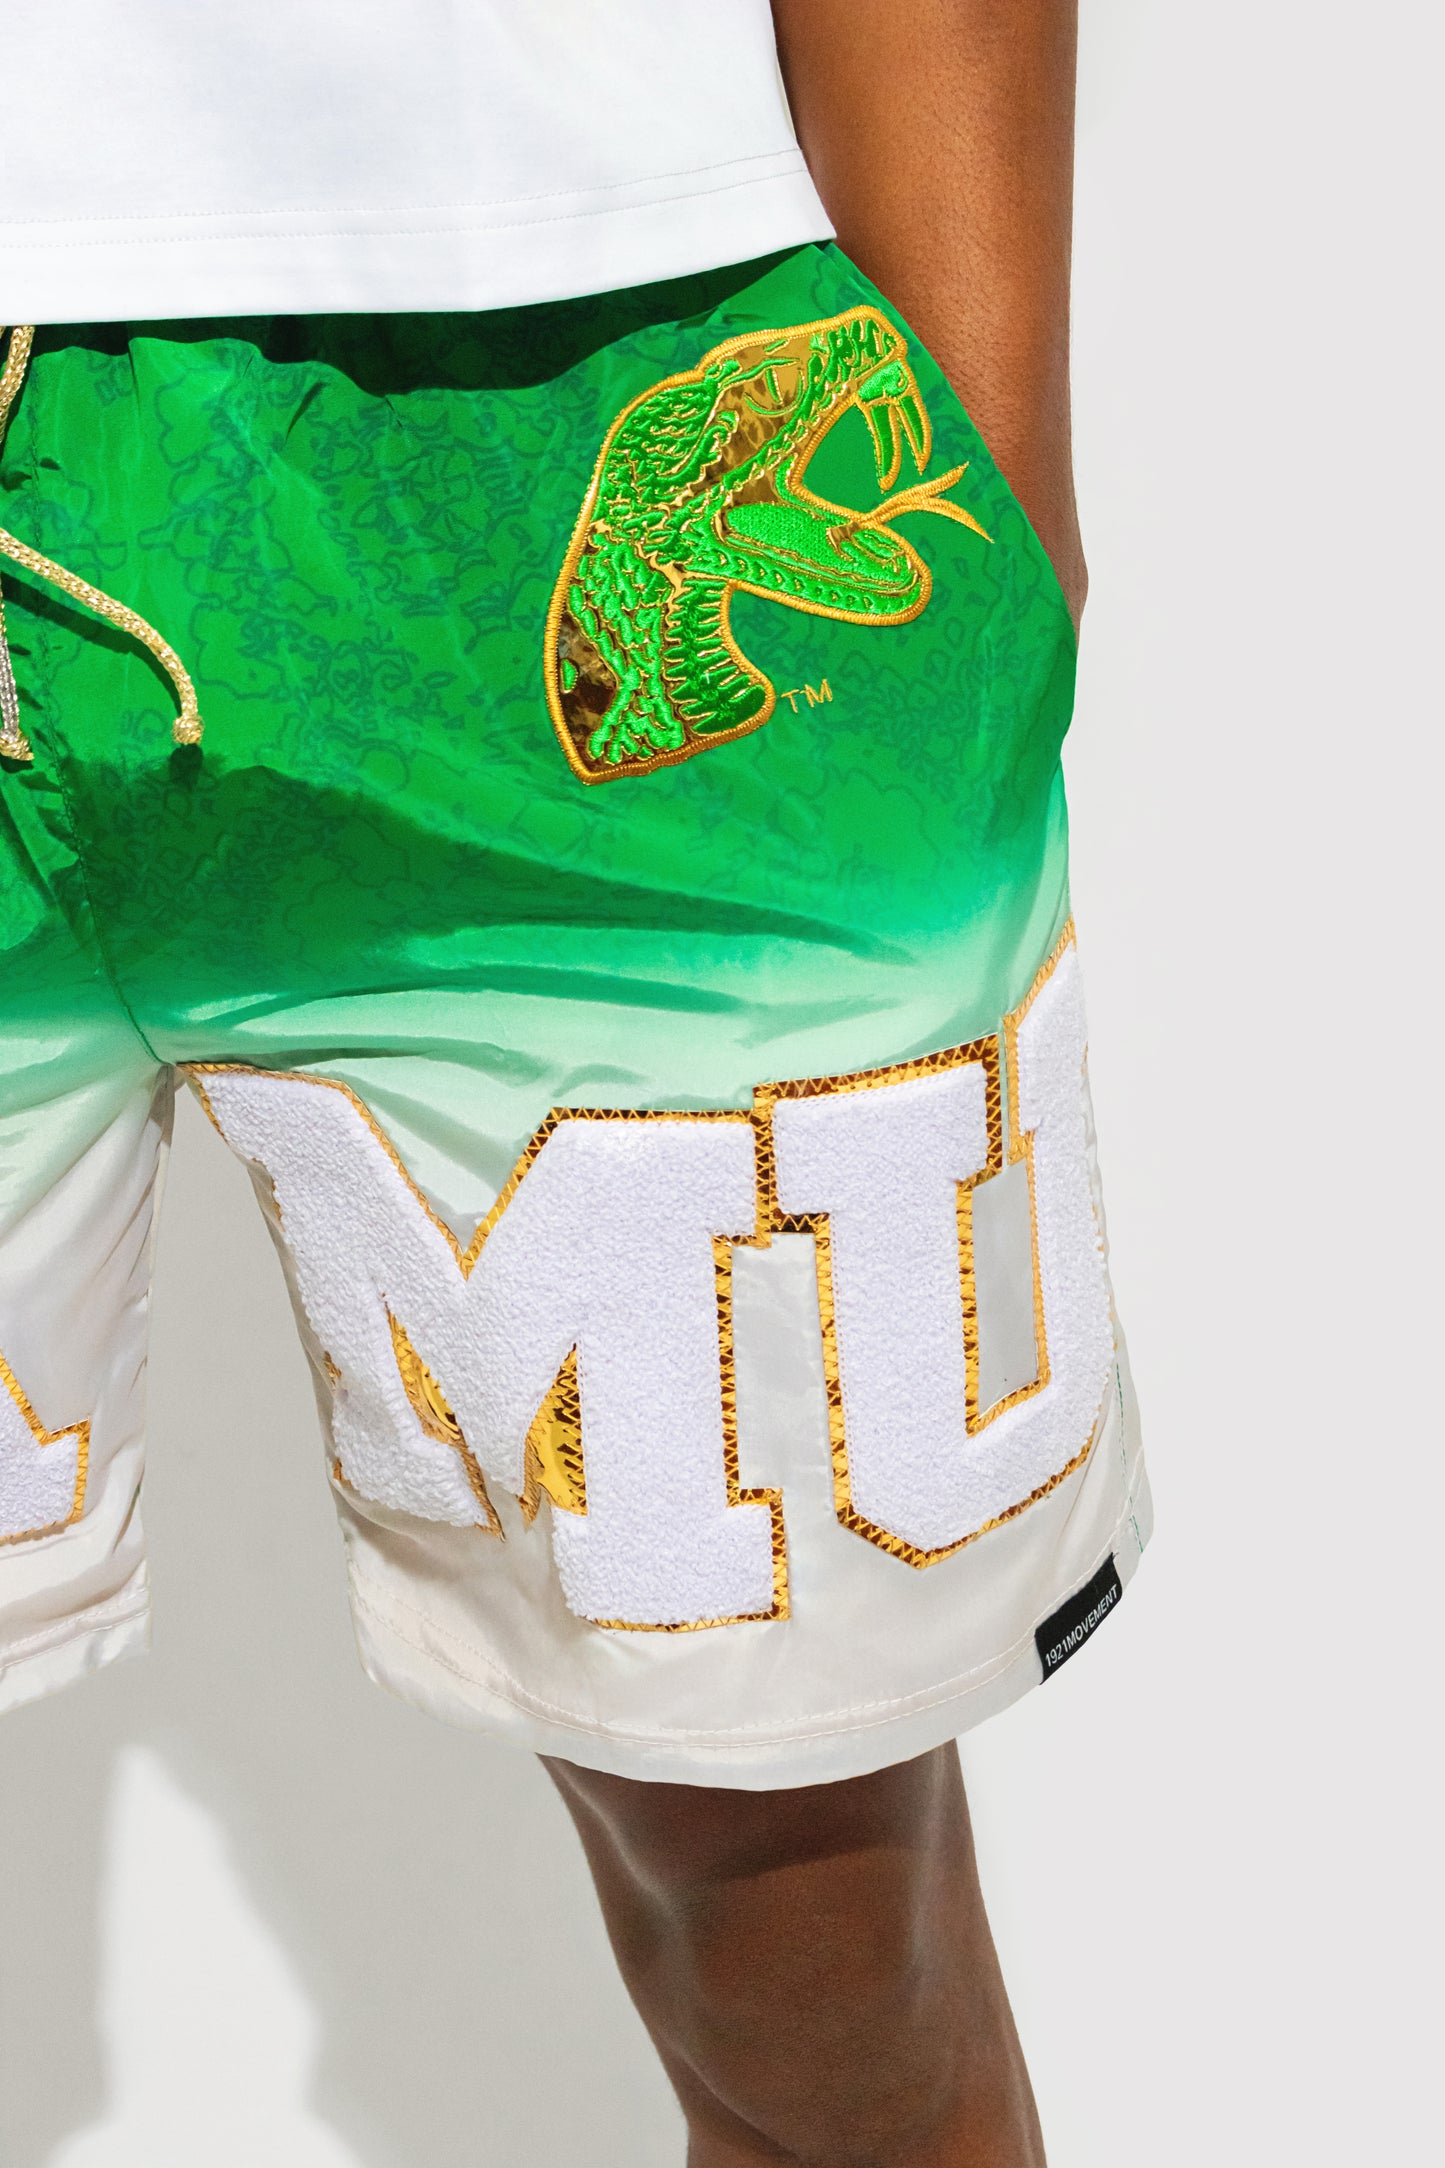 FAMU Champion Shorts